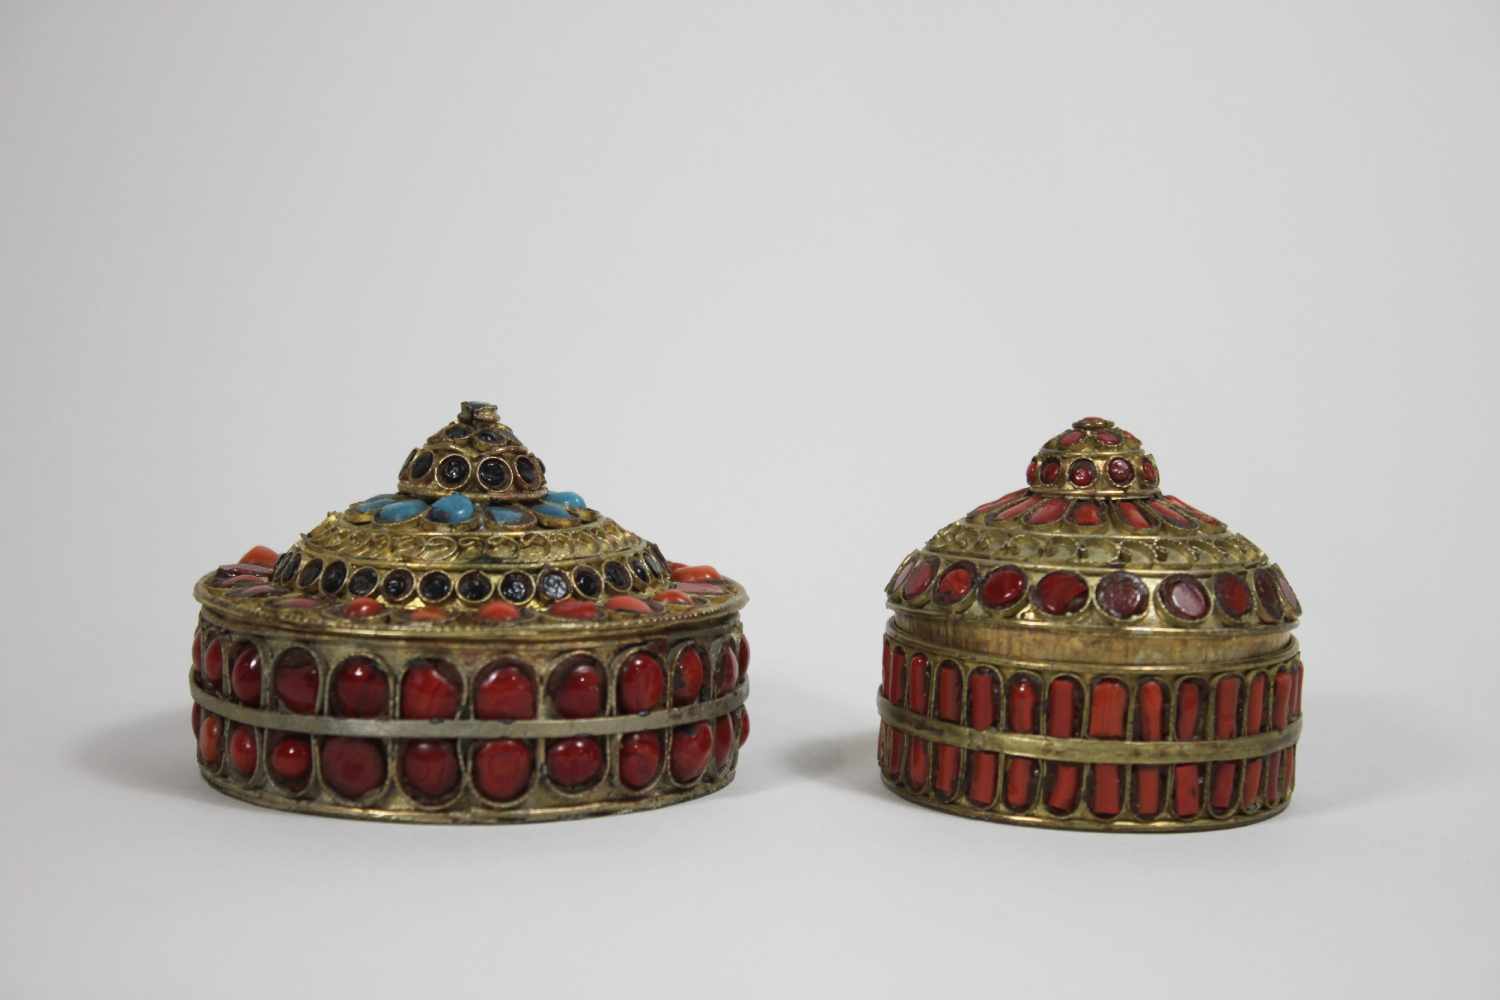 Zwei tibetanische Döschen, Messing mit Korallen, Türkise und Lapislazuli, Innen vergoldet, Steine